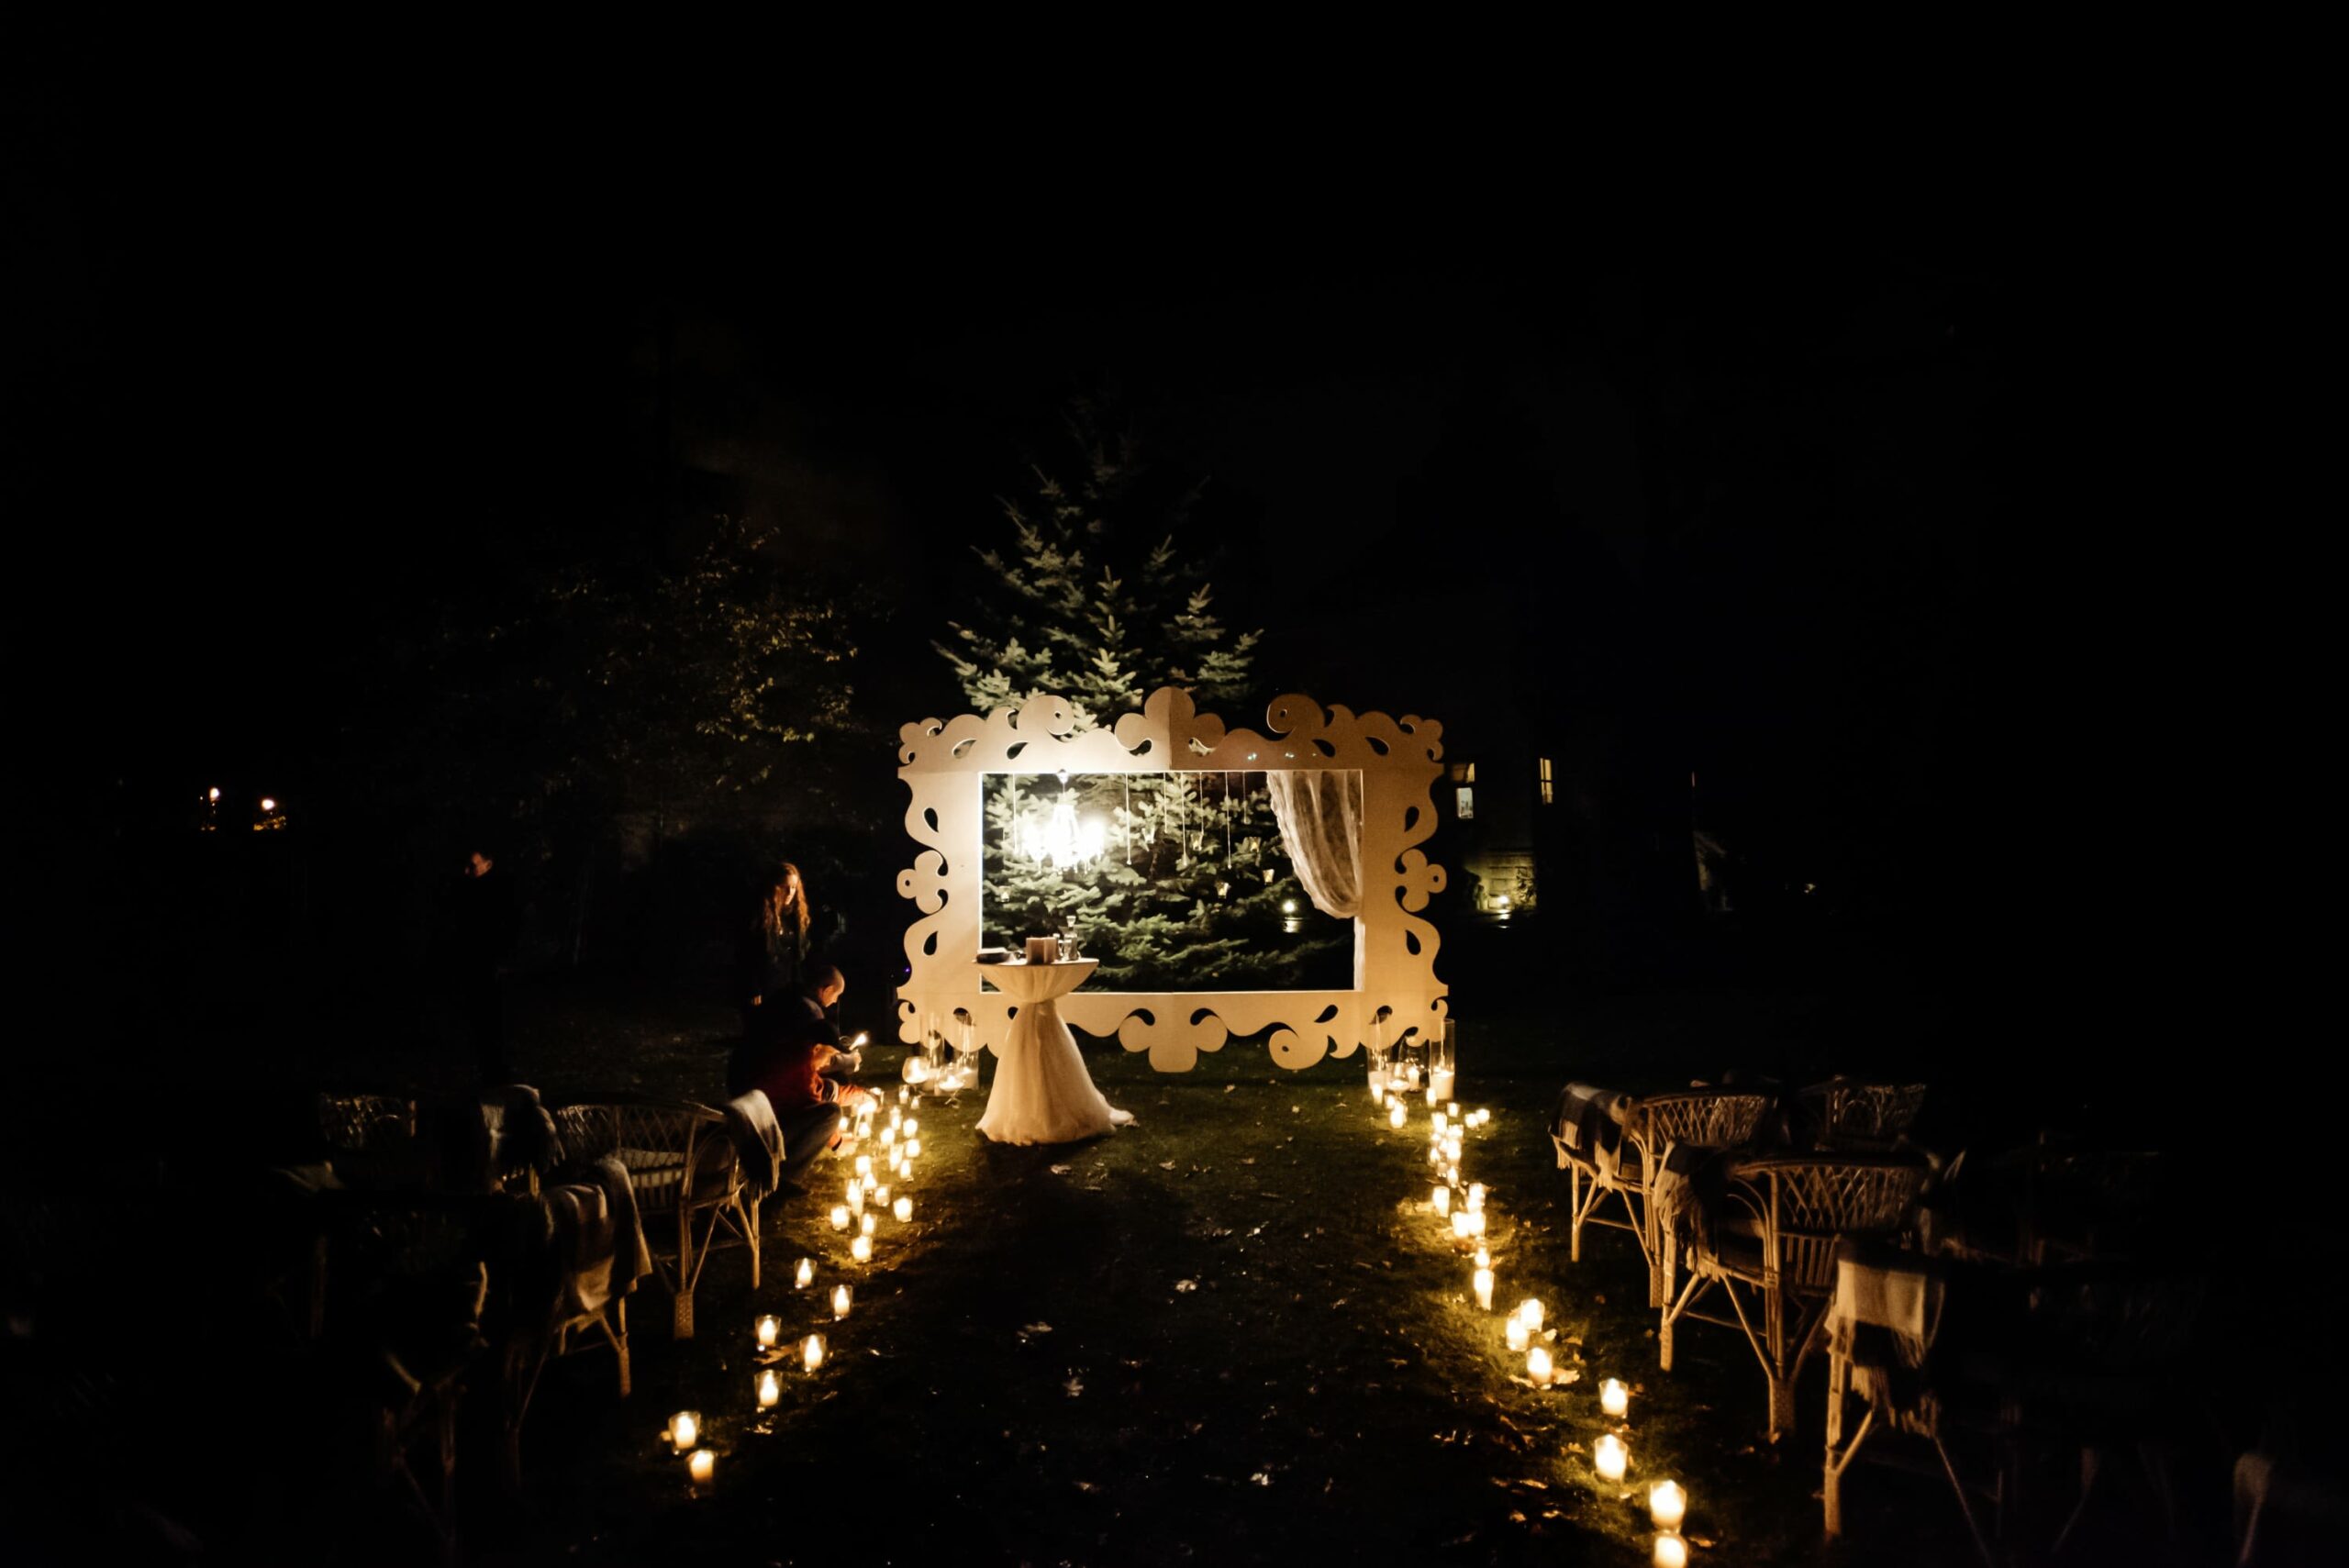 Bridebook.co.uk candlelit aisle nighttime ceremony